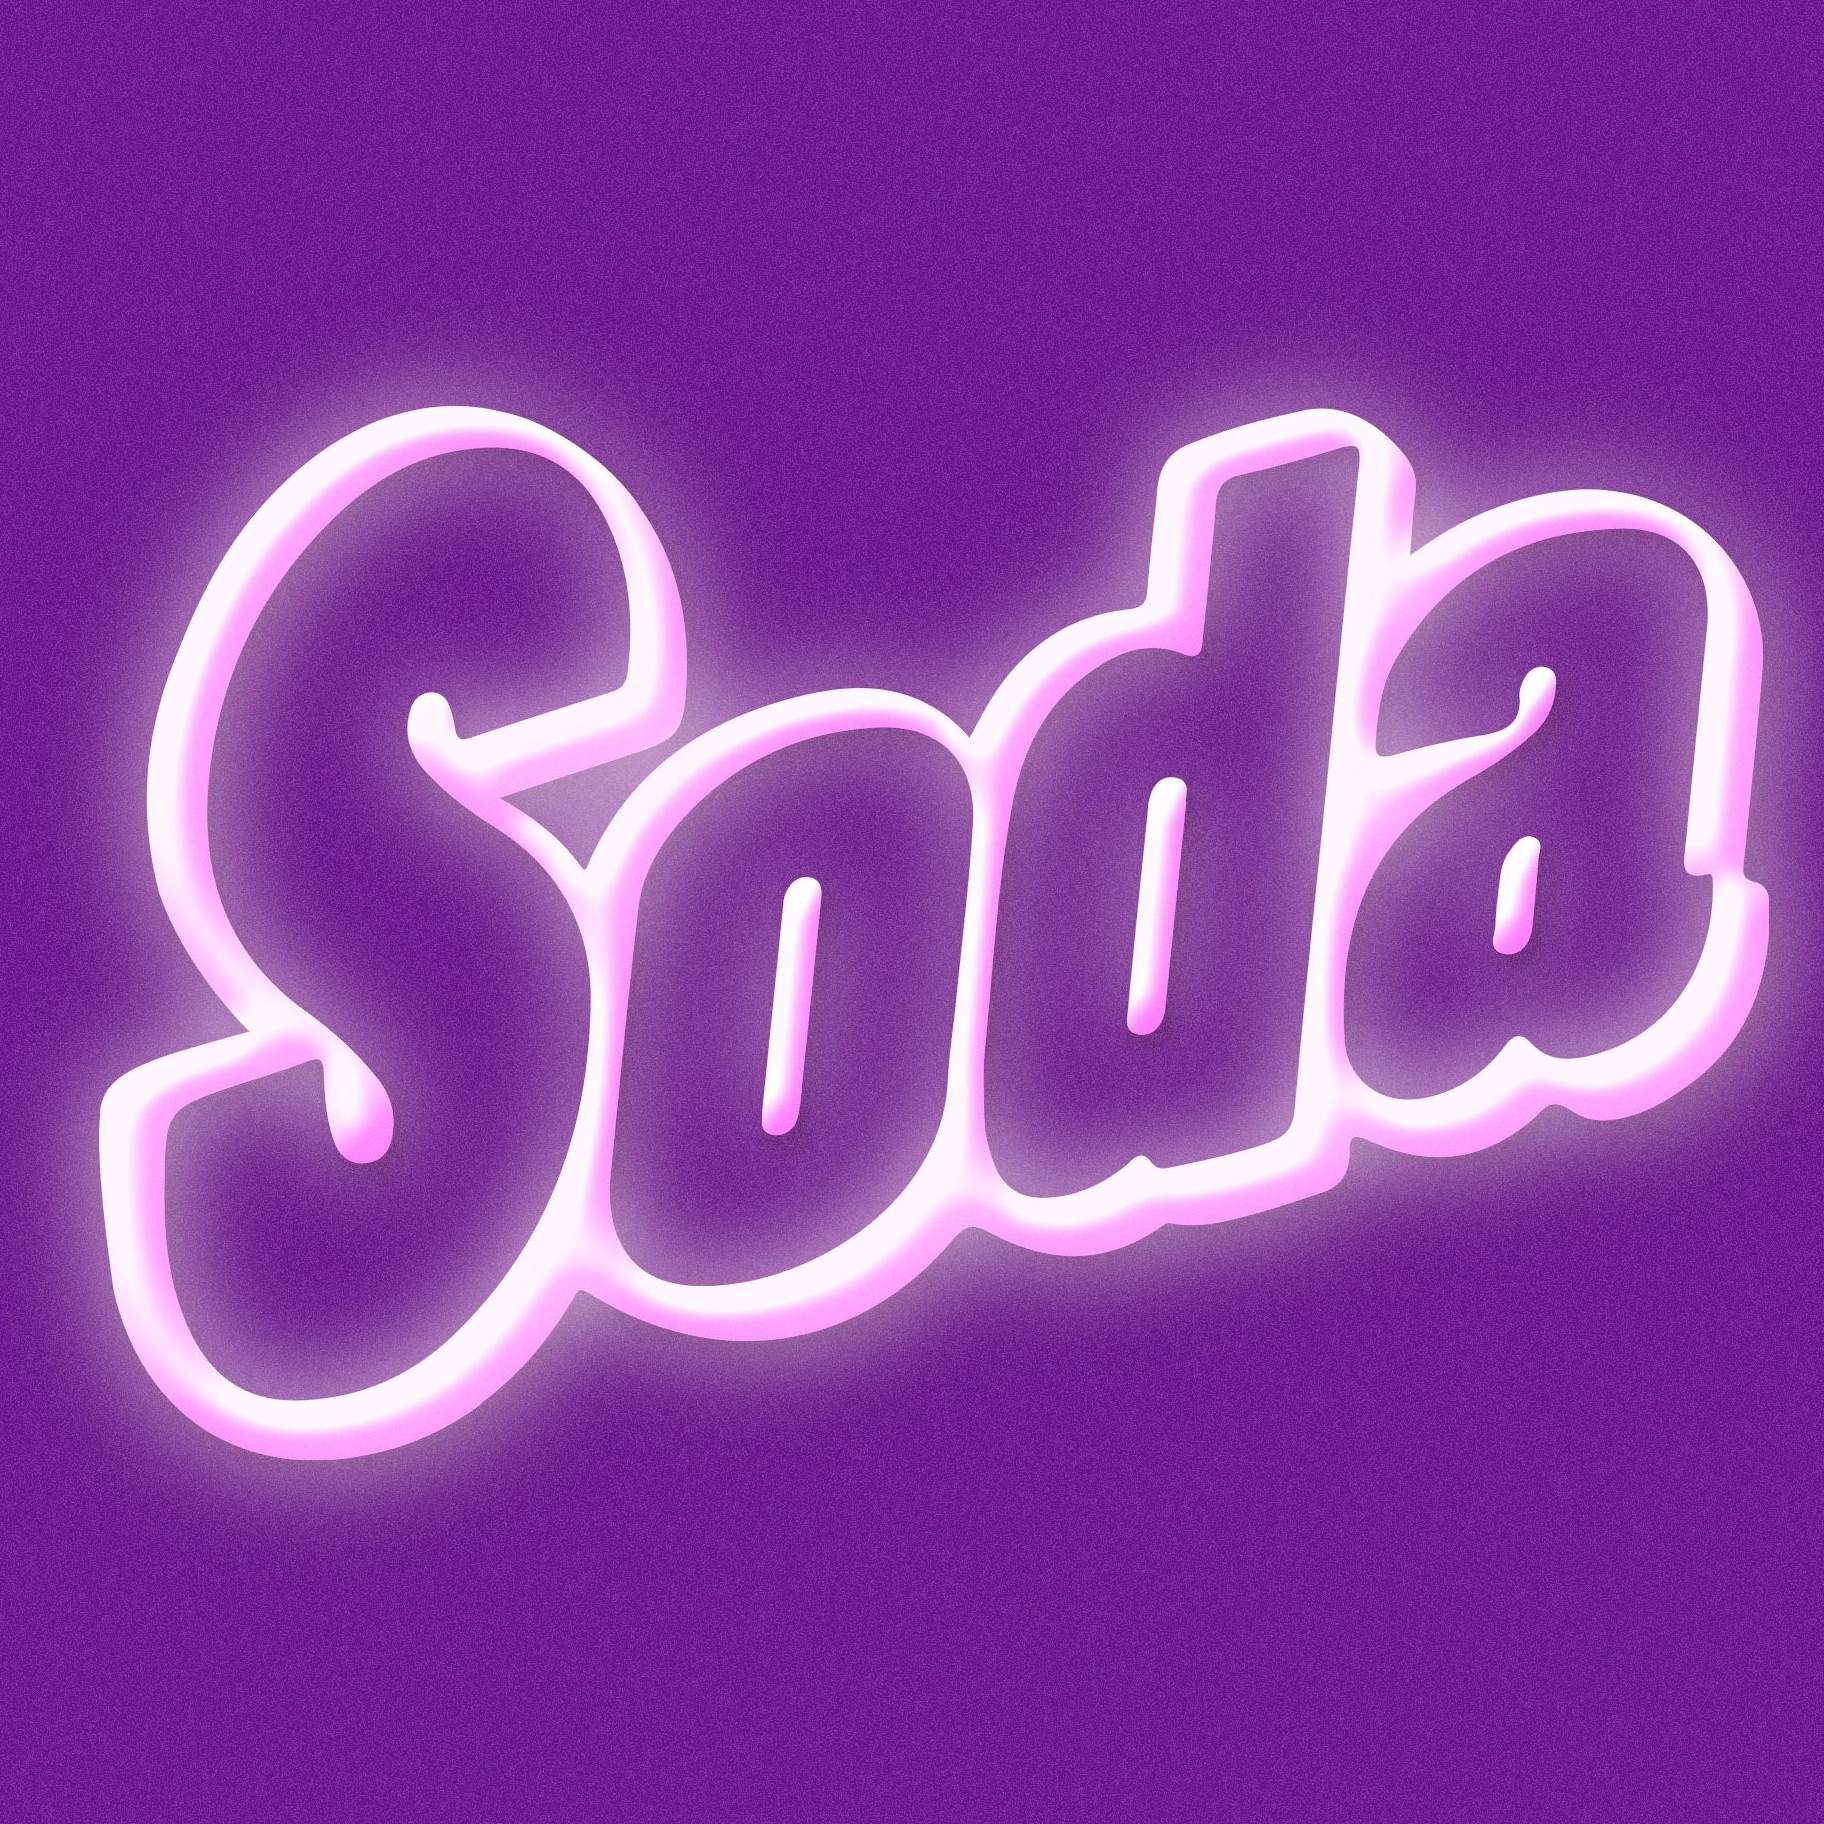 Soda 